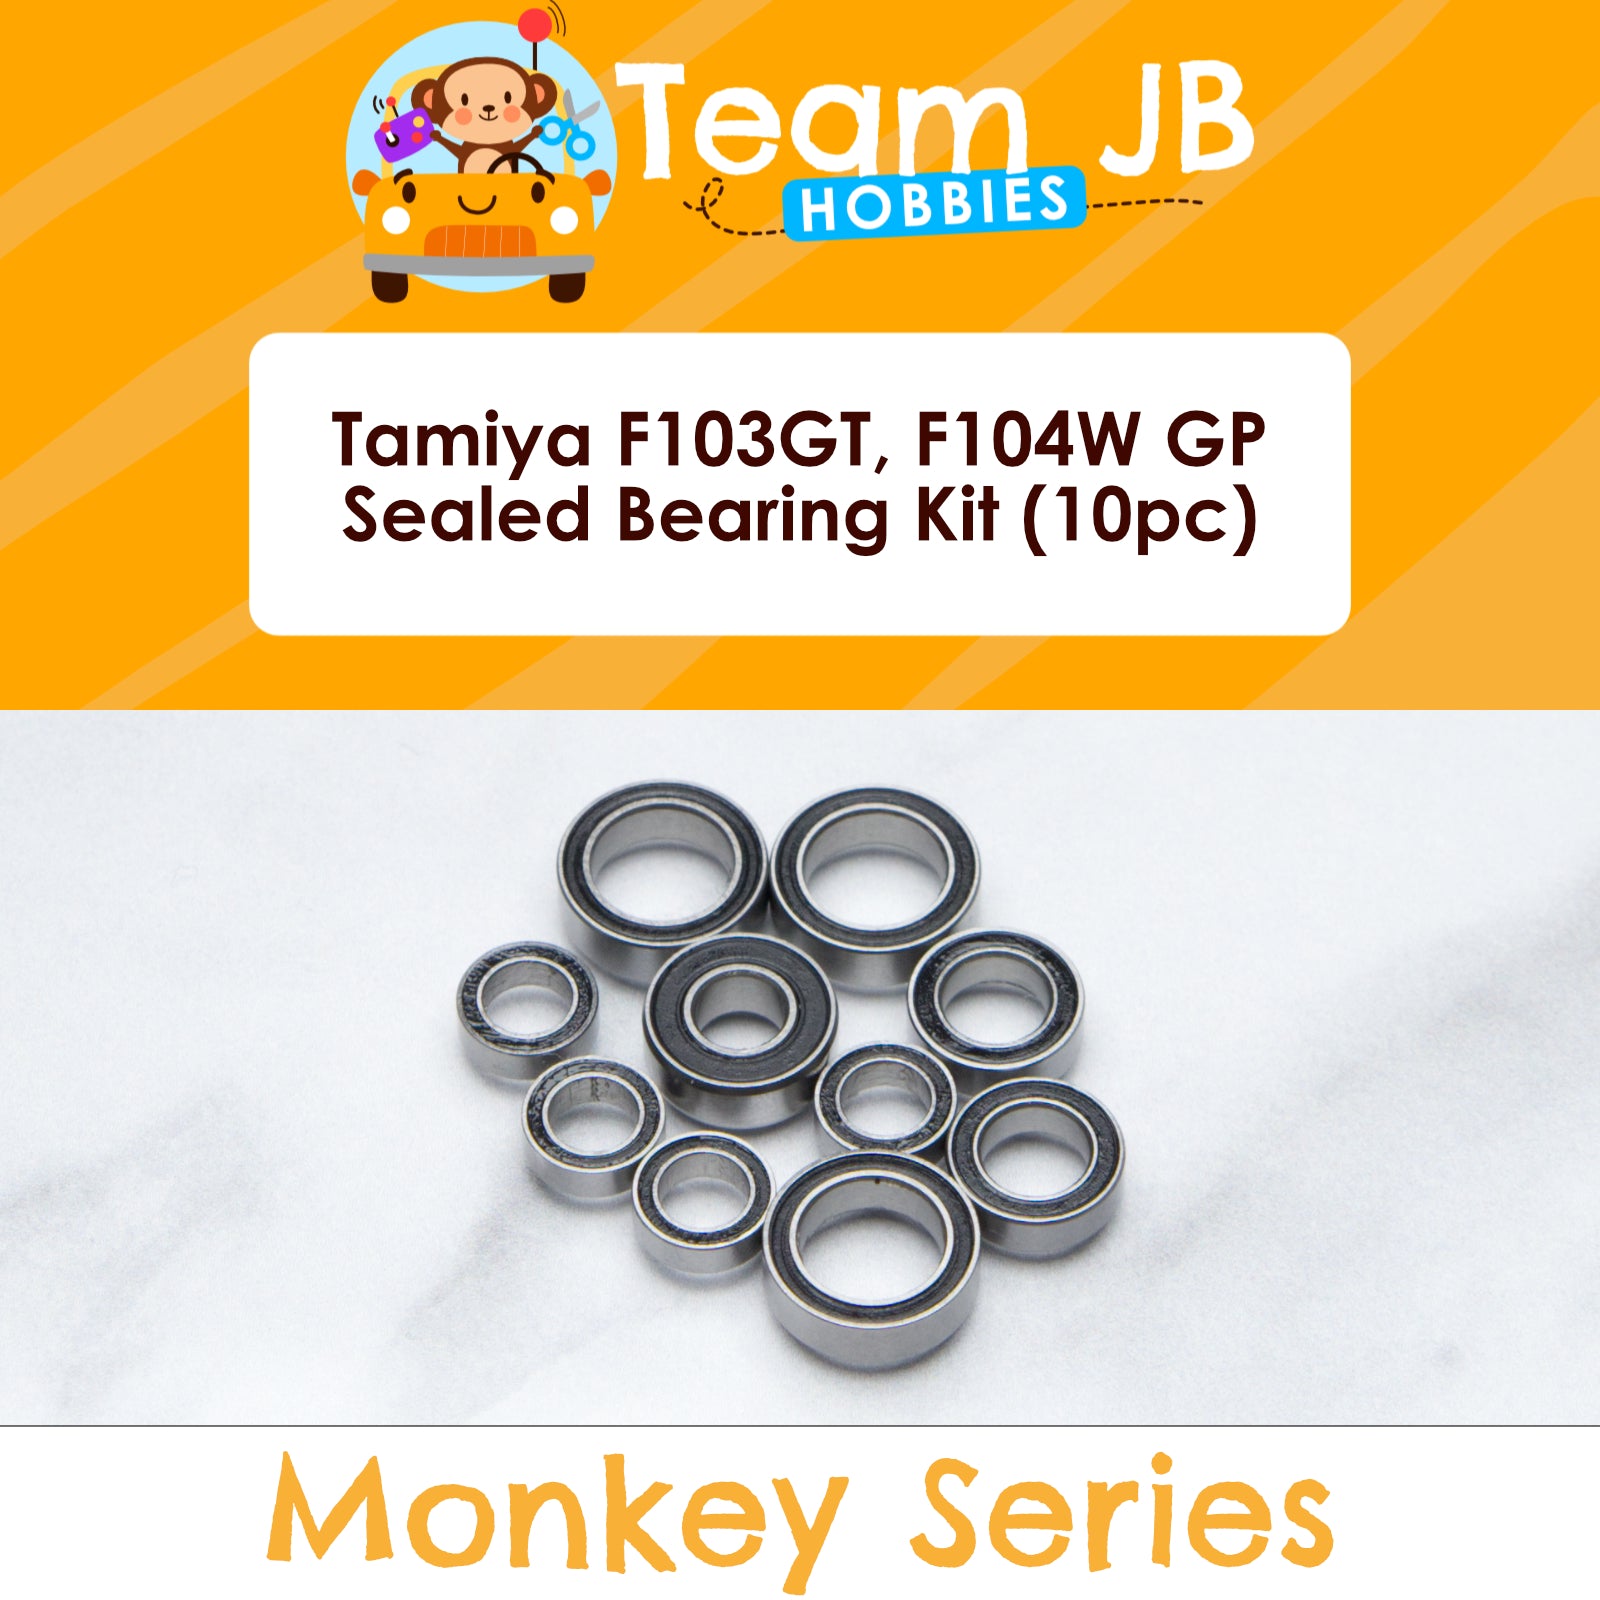 Tamiya F103GT, F104W GP - Sealed Bearing Kit